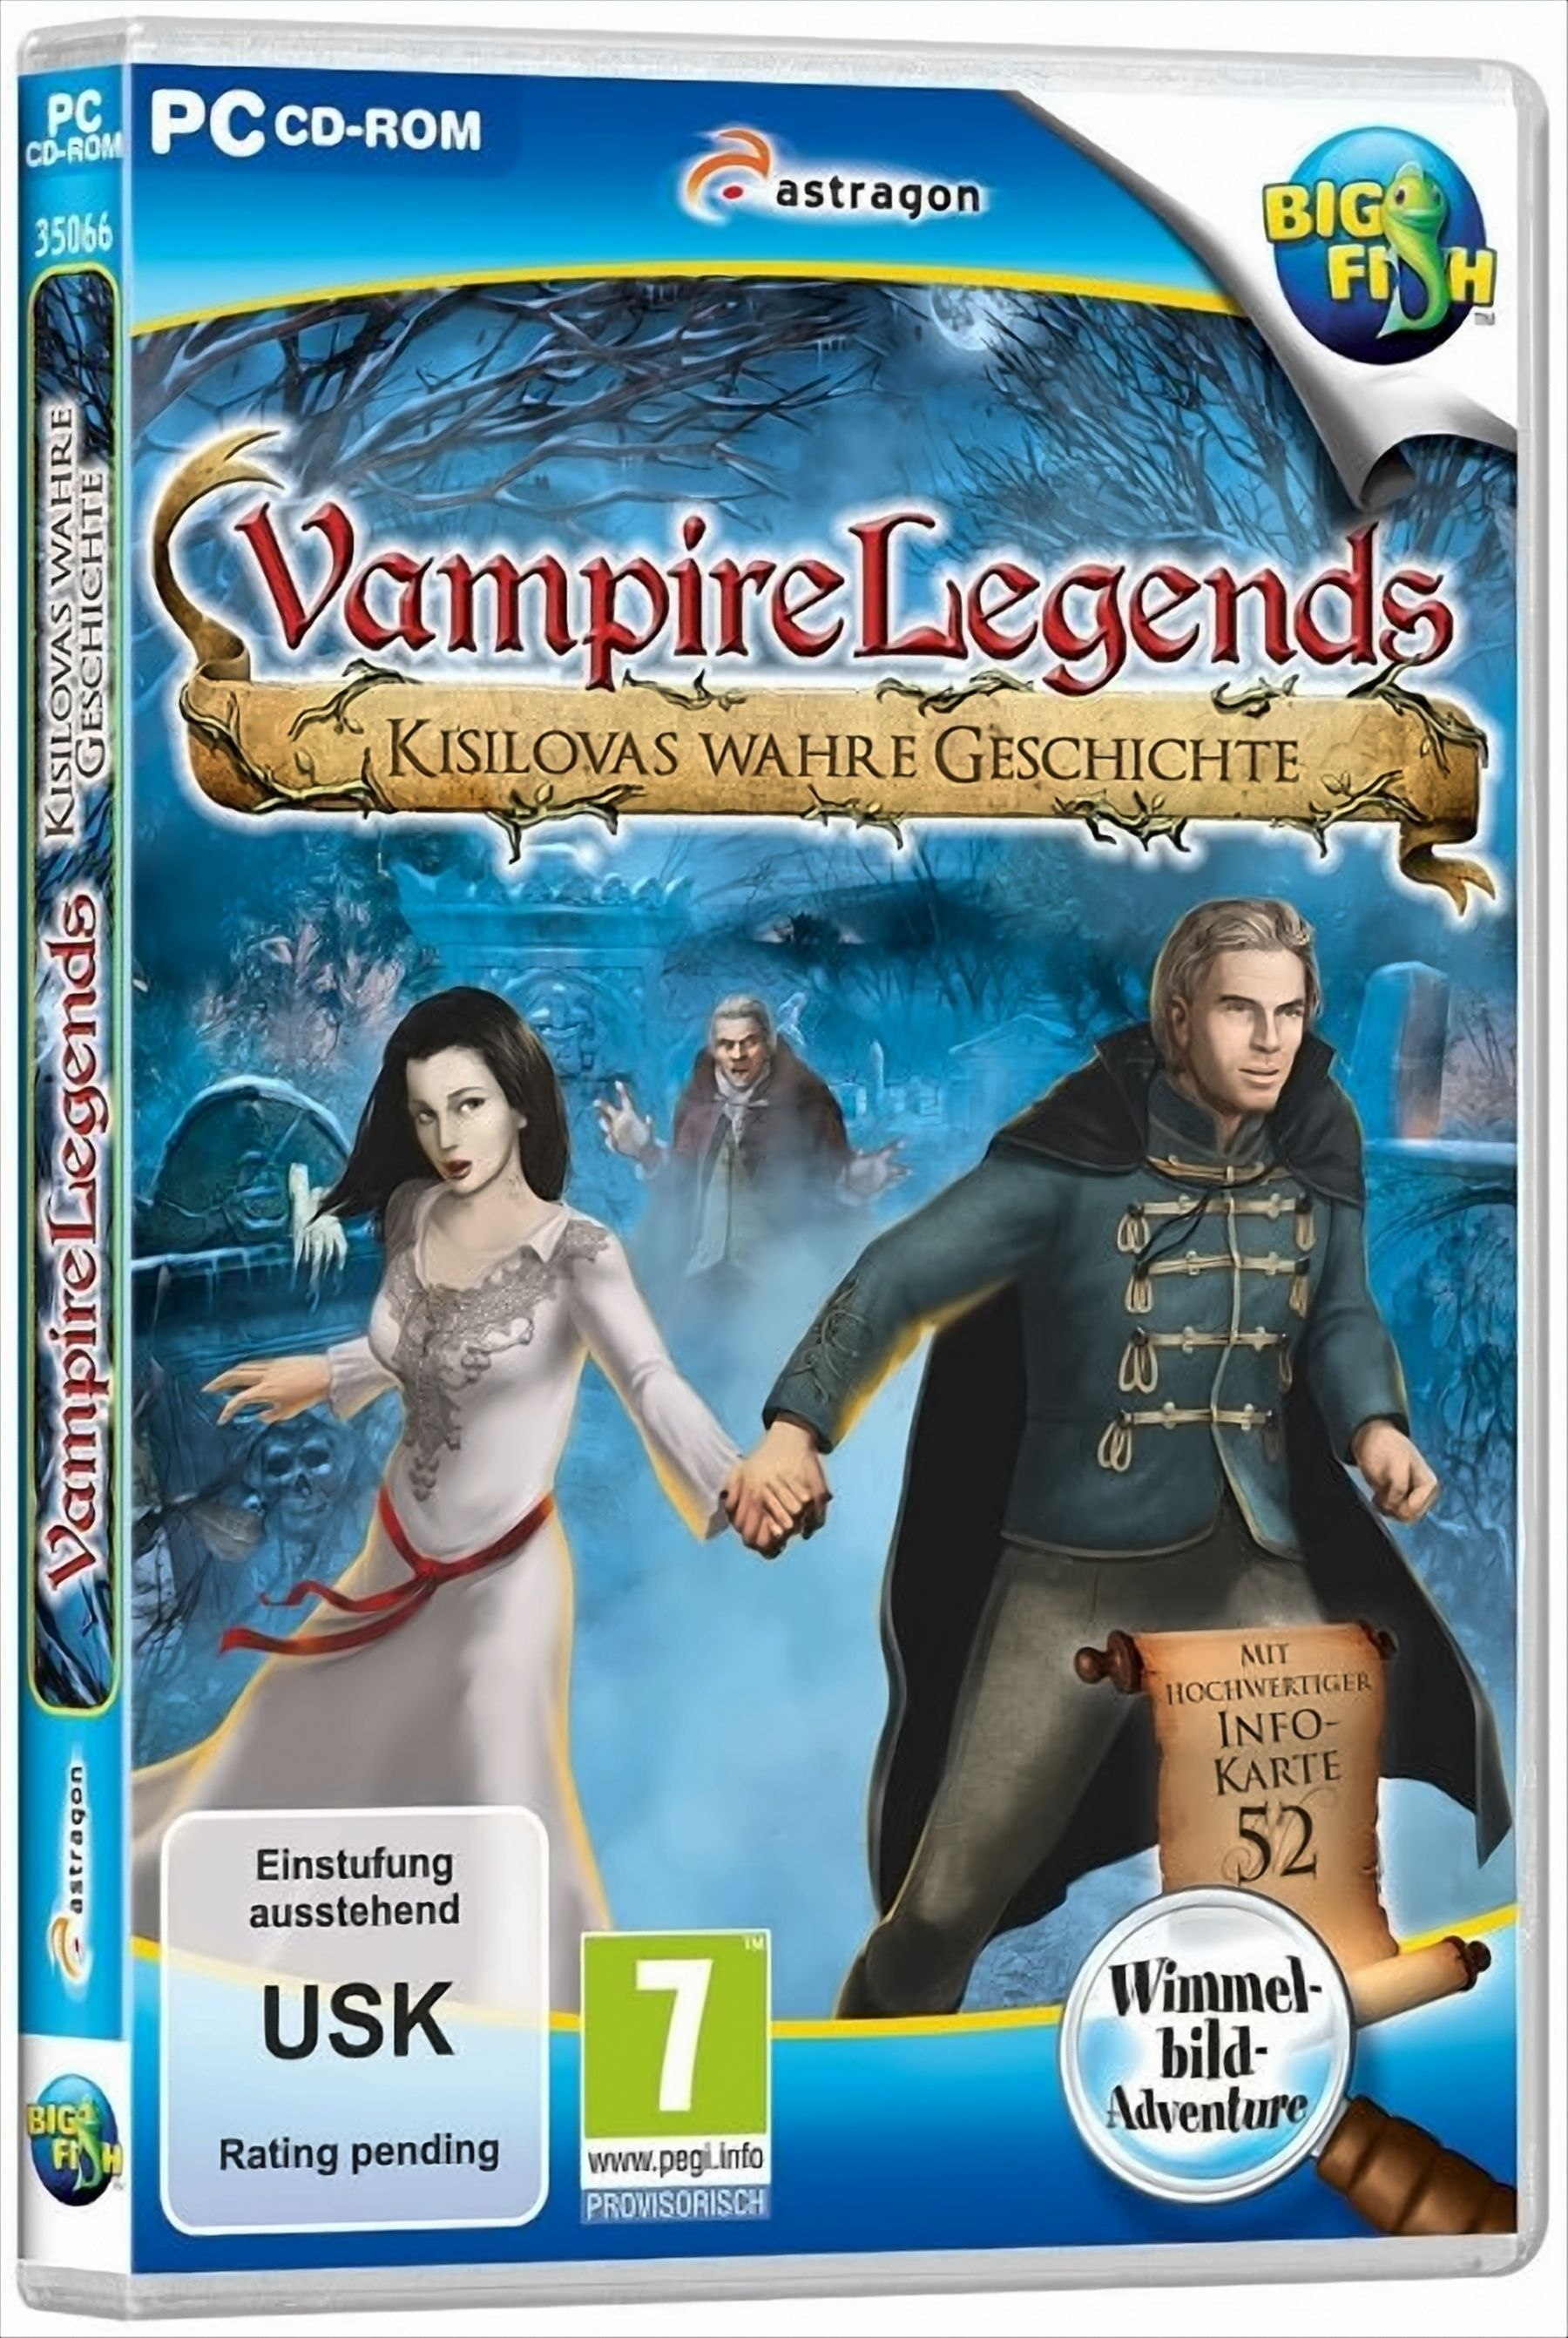 Vampire Legends: wahre von Kisilova Die Geschichte - [PC